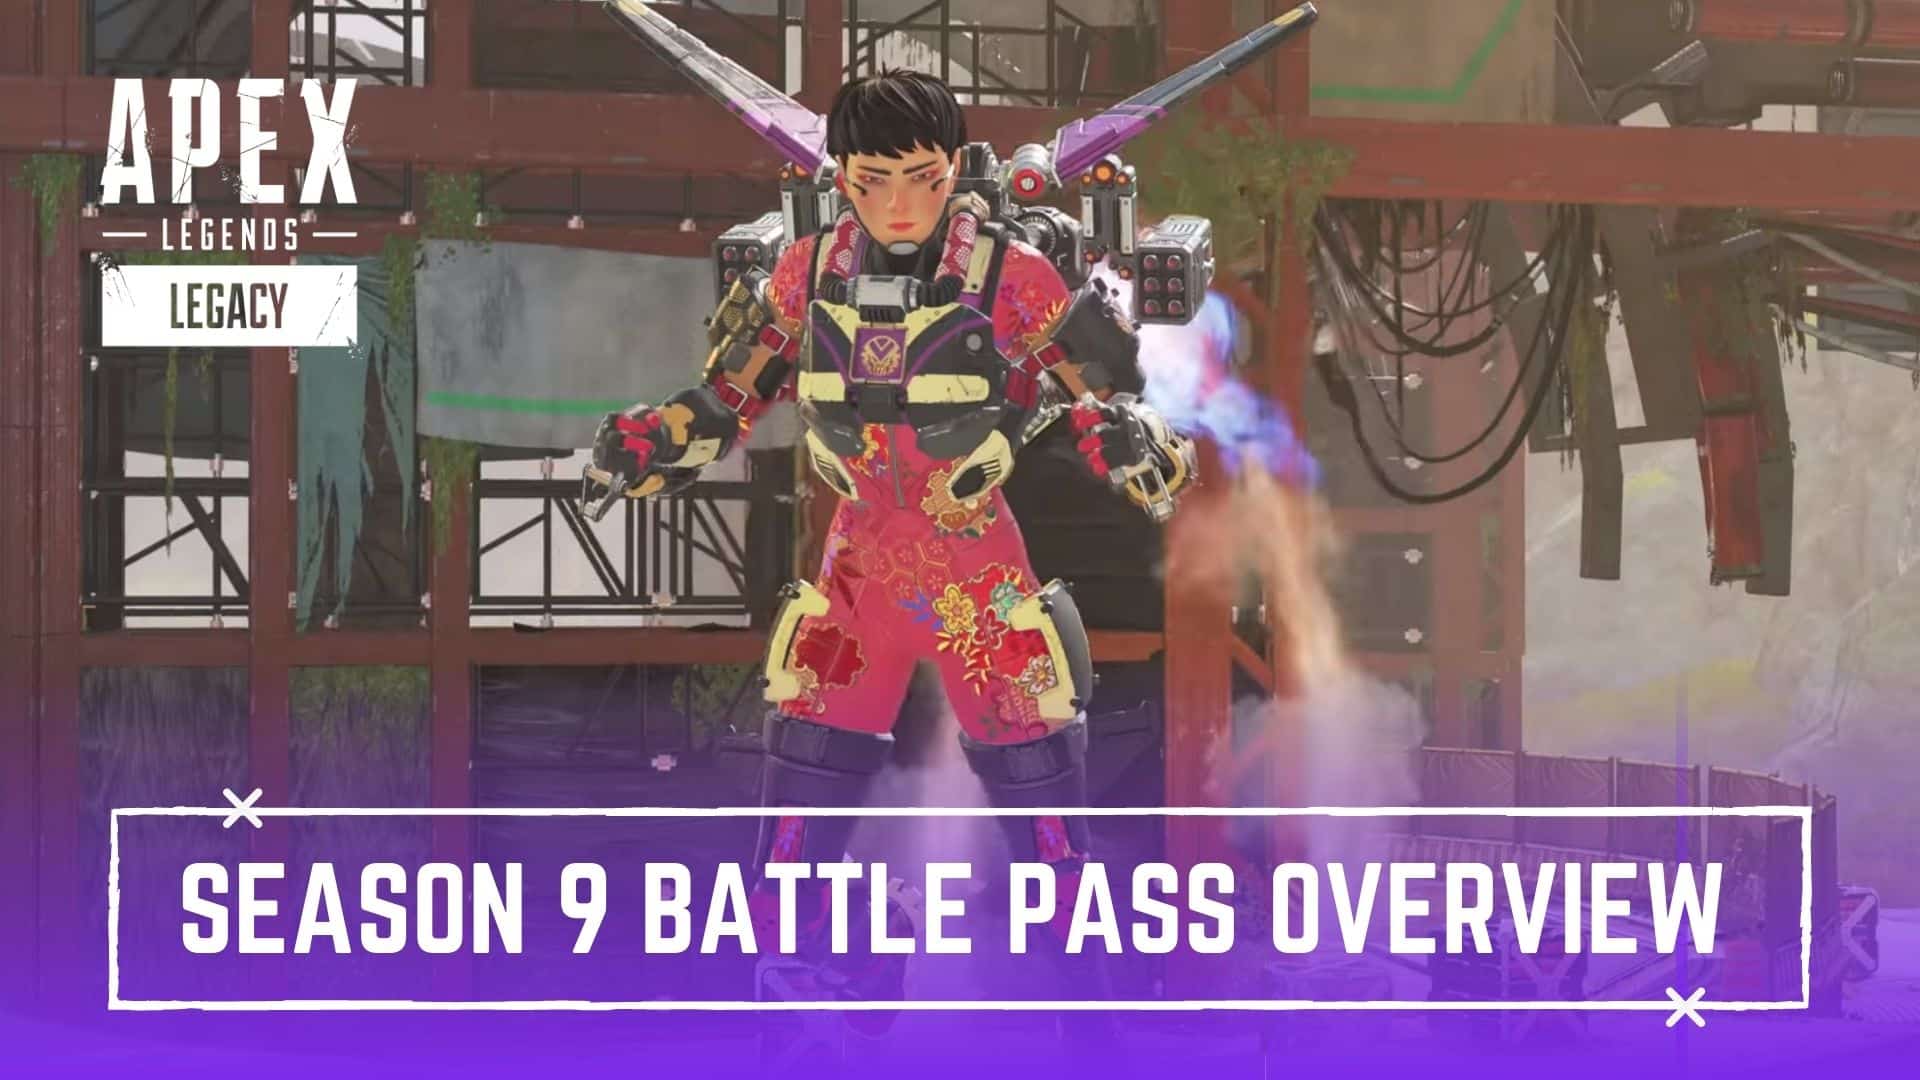 Season 9 battle pass